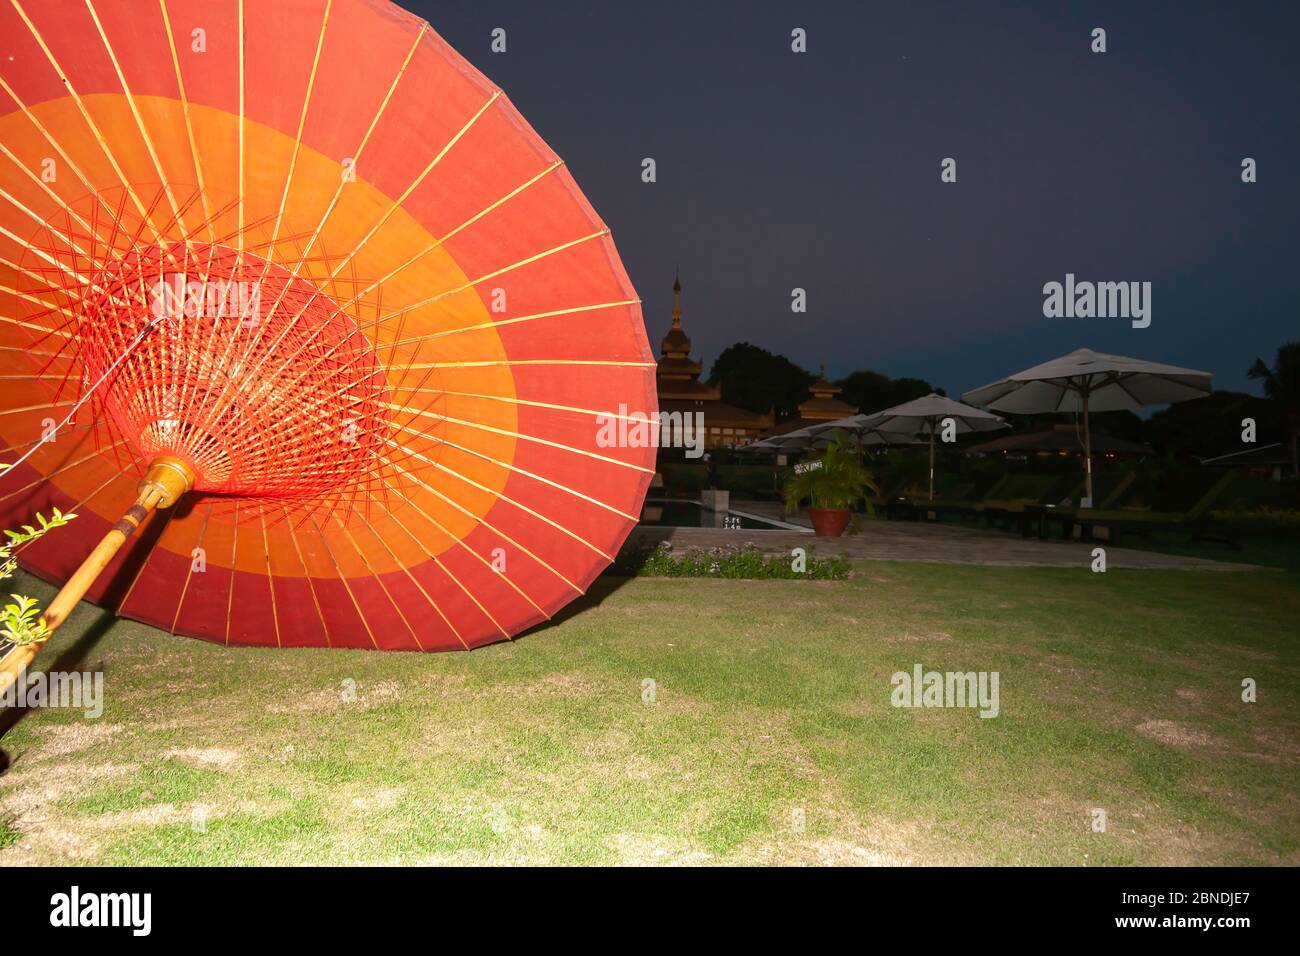 La luz ilumina el paraguas asiático tradicional rojo brillante y naranja en el suelo con fondo oscuro y el cielo detrás. Foto de stock